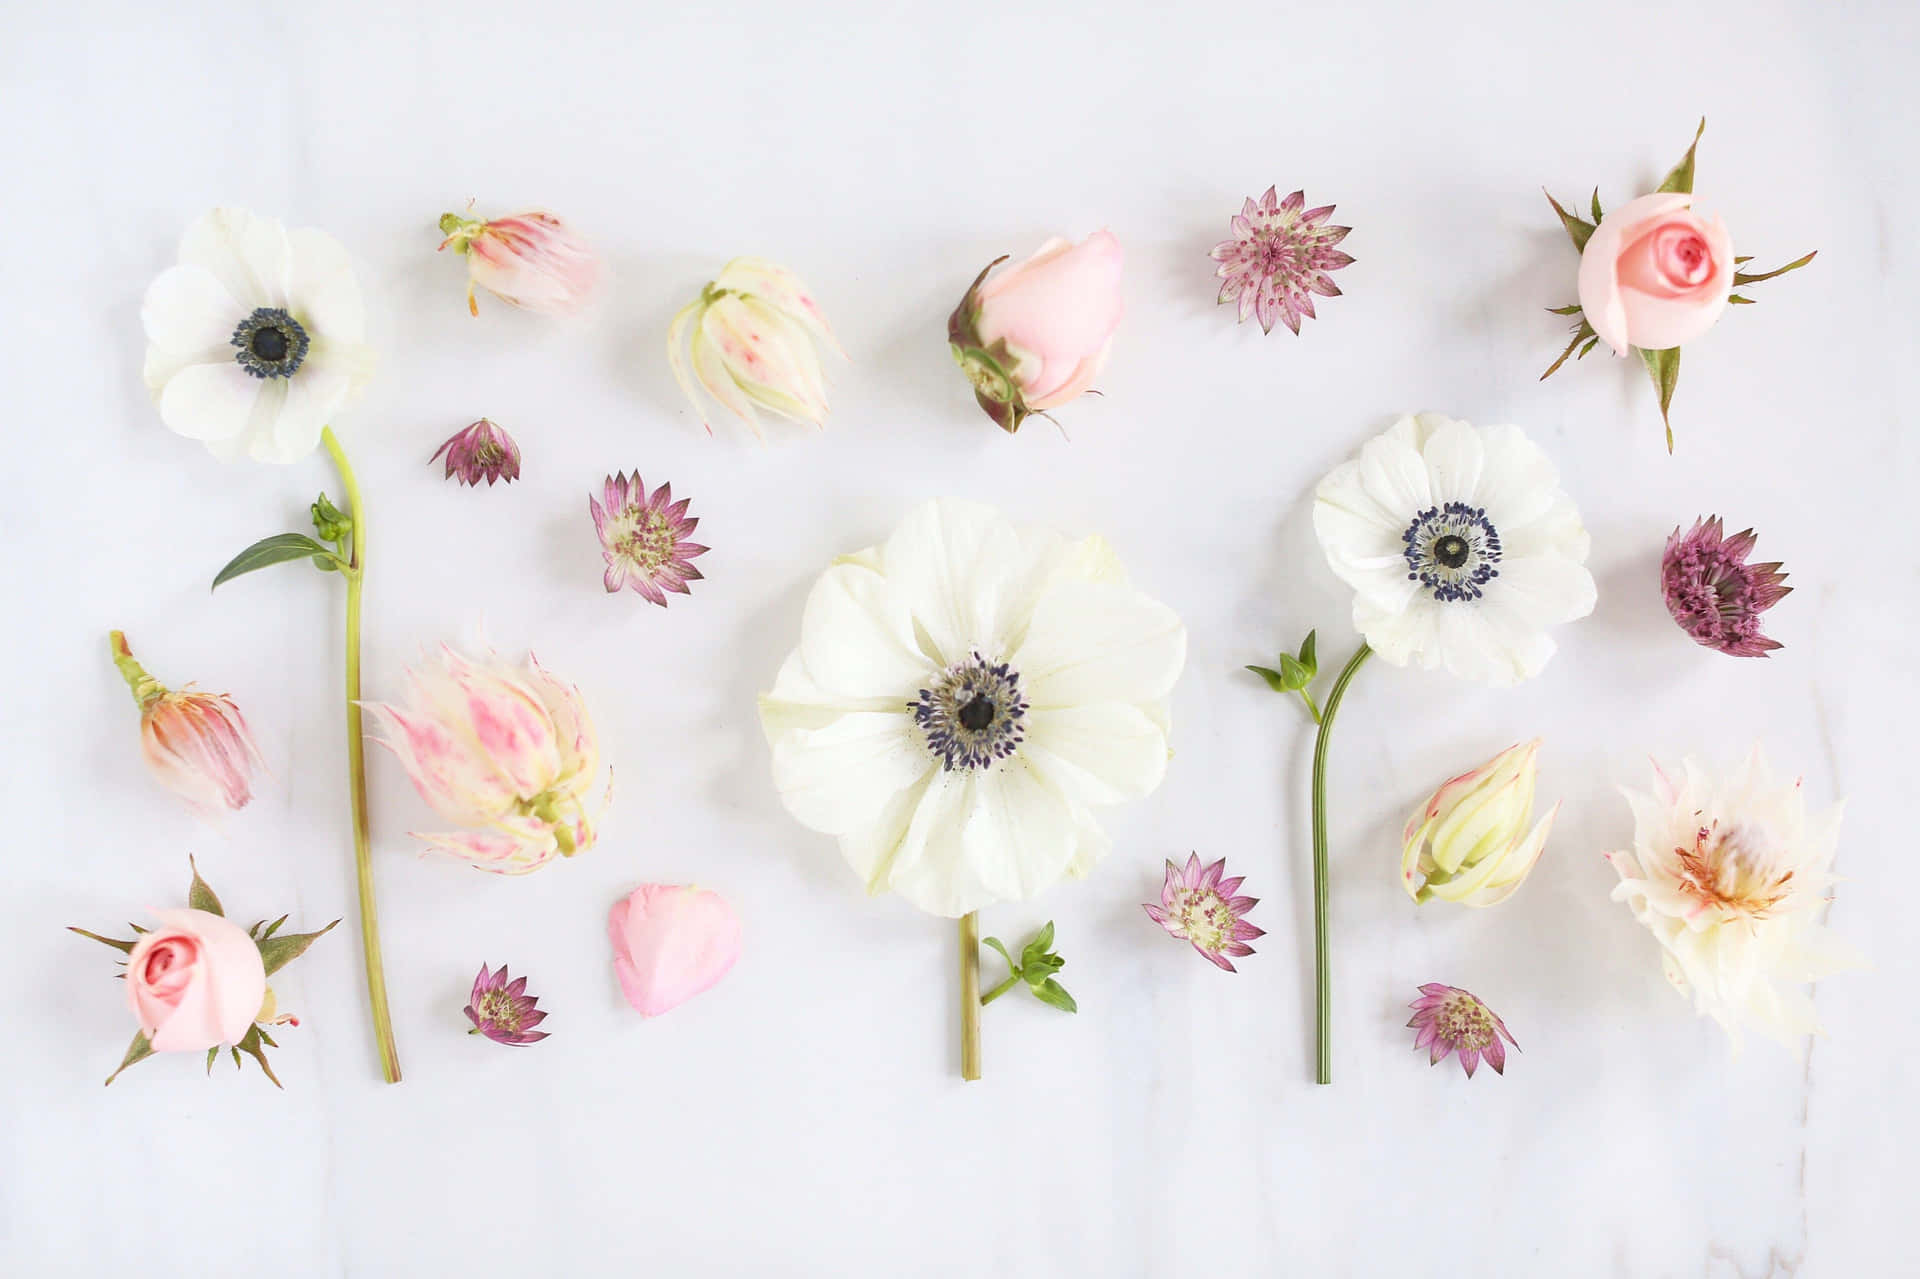 Envit Och Rosa Blomsterarrangemang På En Vit Yta